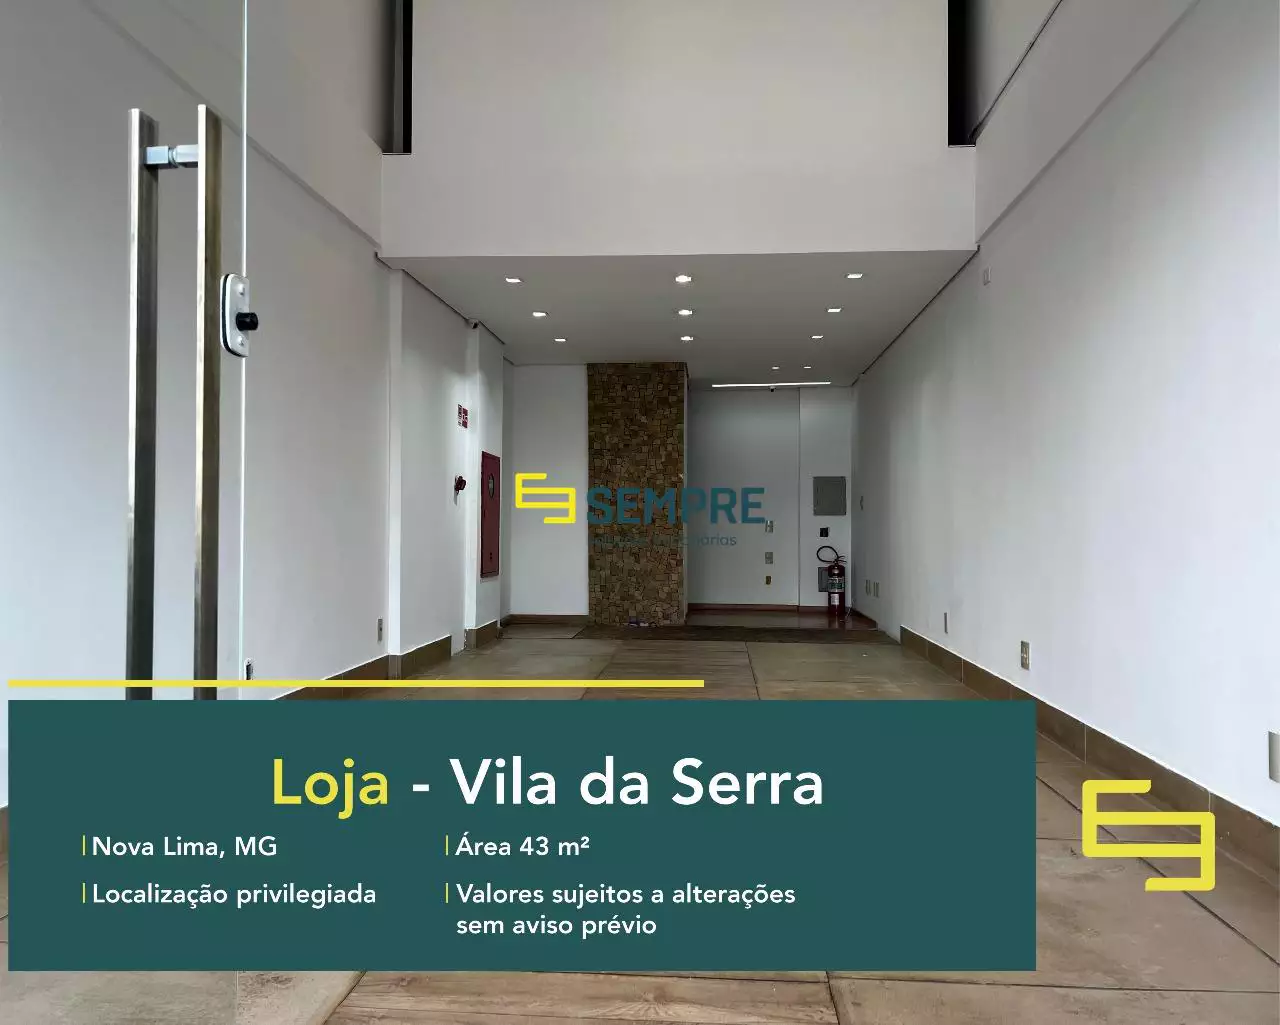 Loja para alugar no Vila da Serra em Nova Lima, em excelente localização. O estabelecimento comercial conta com área de 43,99 m².